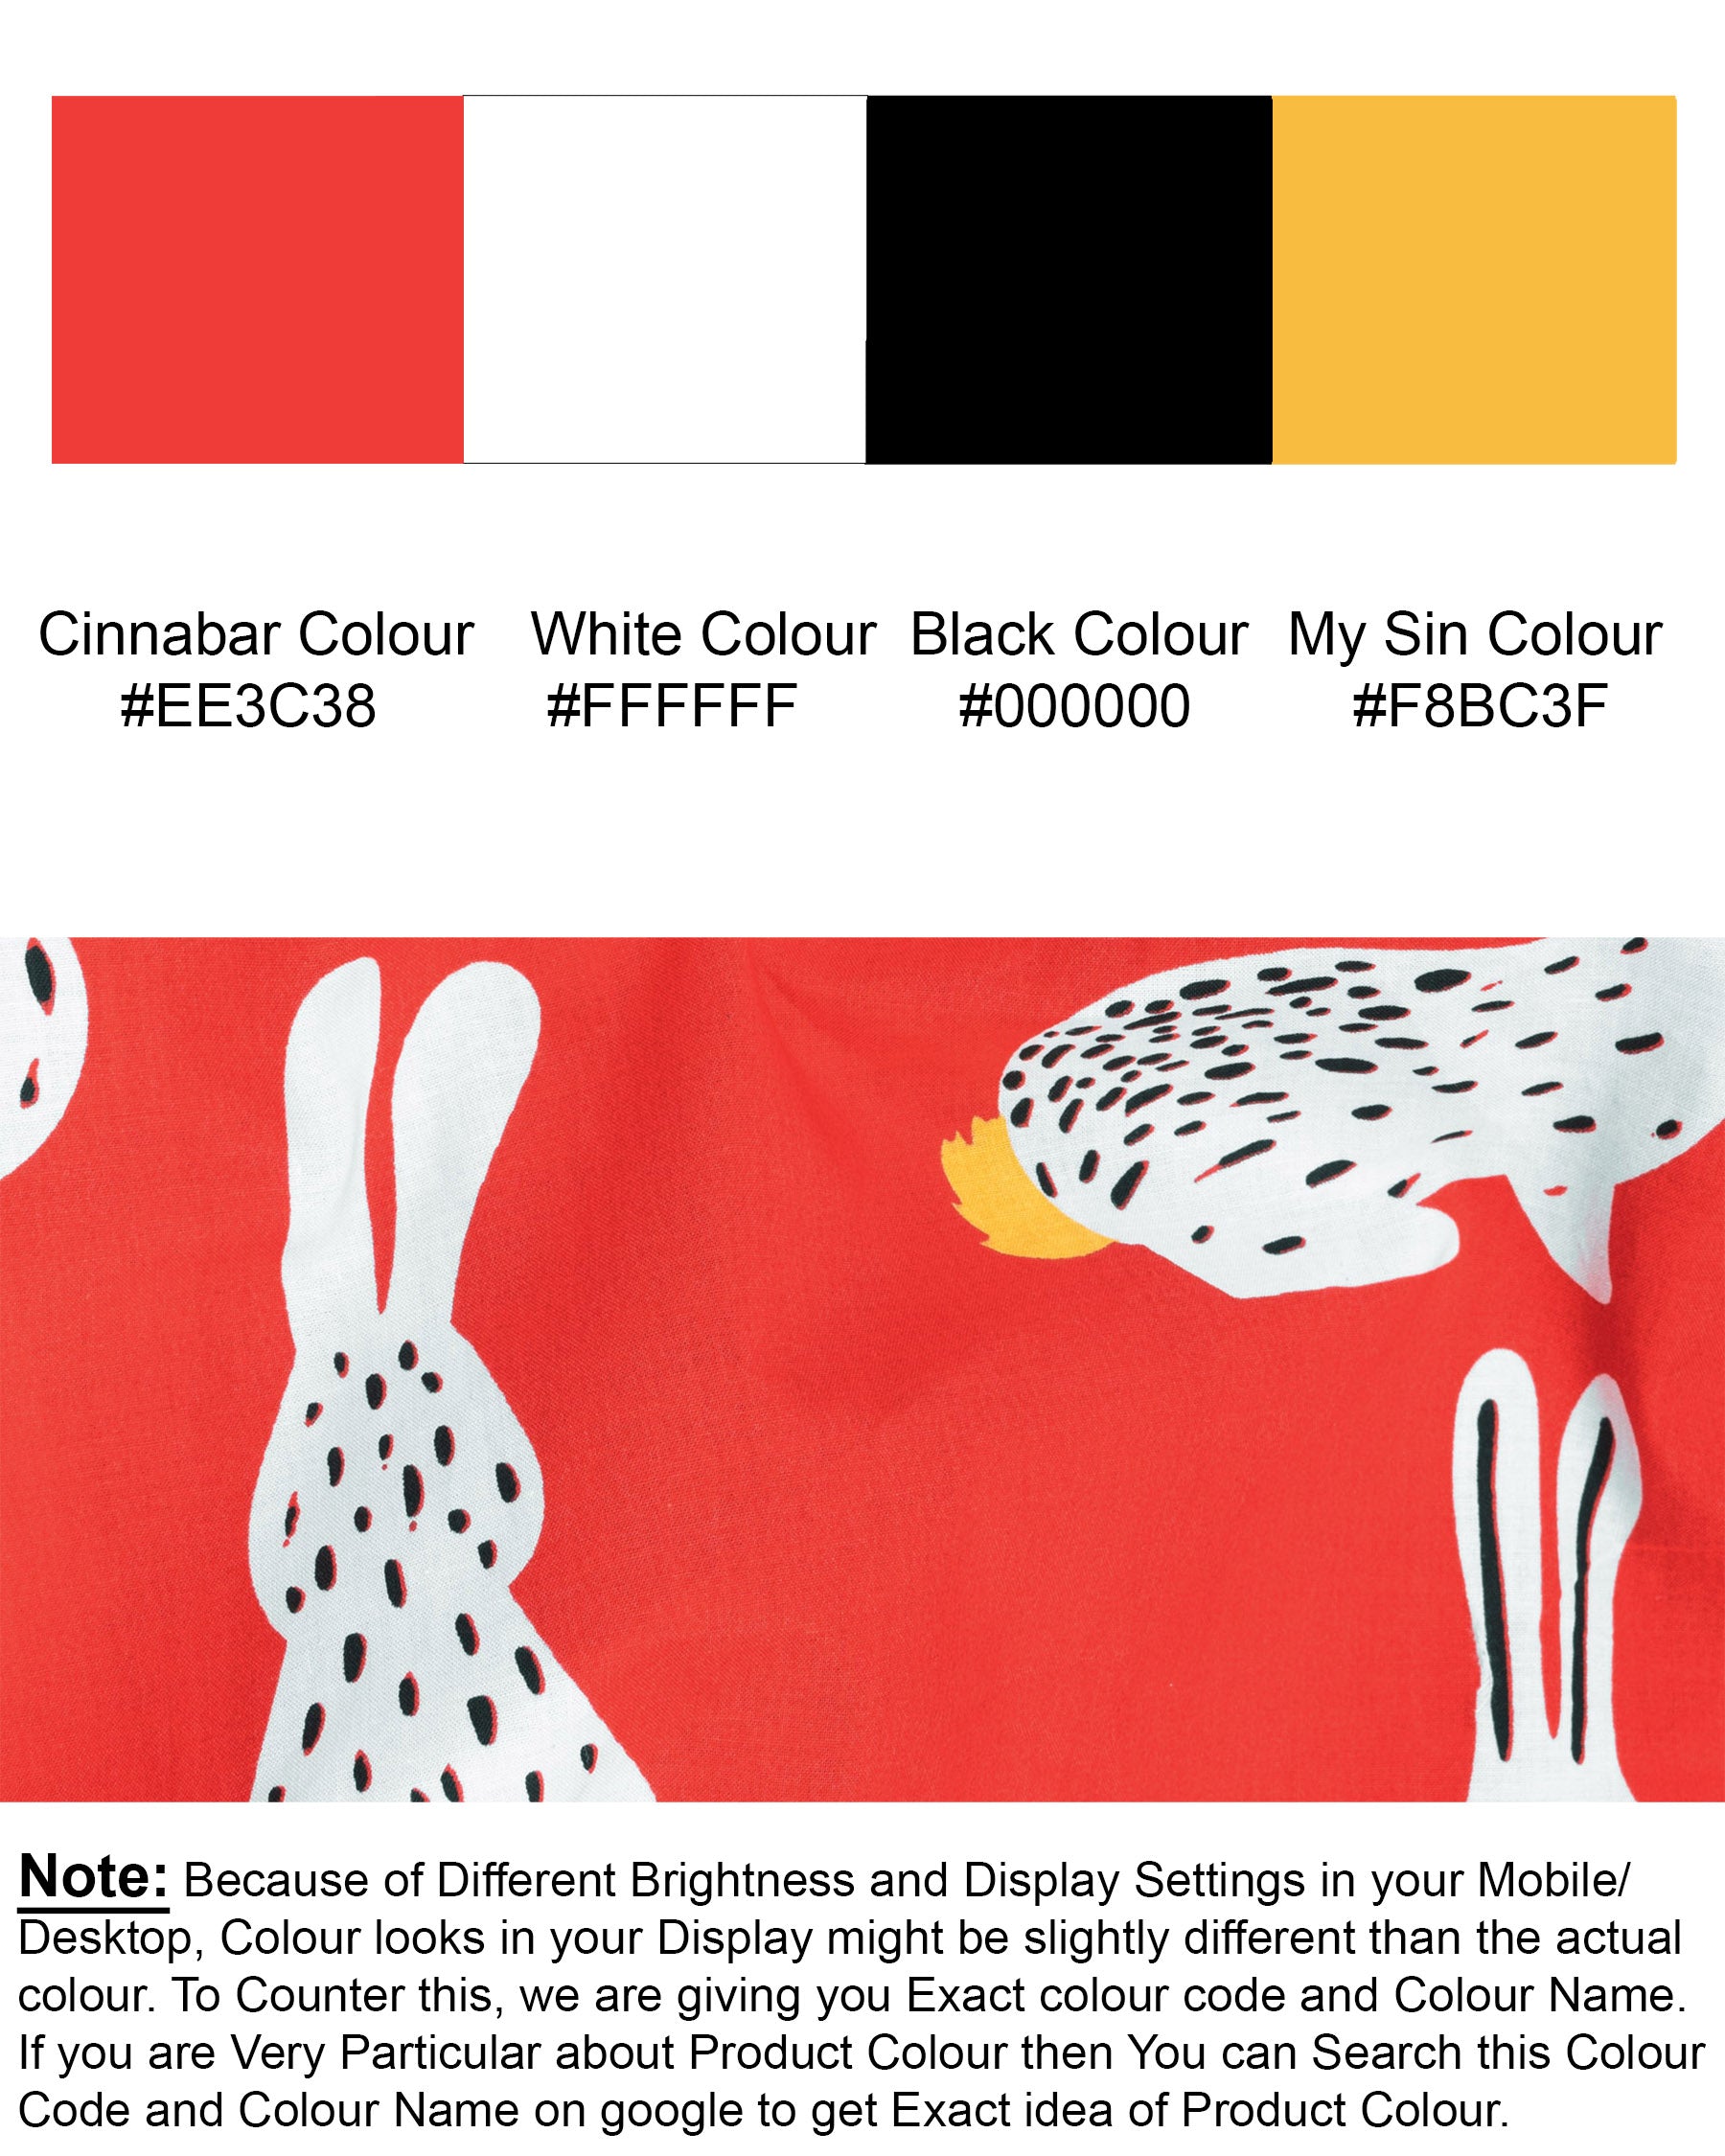 Cinnabar Red and White Rabbit Printed Premium Cotton Shirt 7072-38,7072-38,7072-39,7072-39,7072-40,7072-40,7072-42,7072-42,7072-44,7072-44,7072-46,7072-46,7072-48,7072-48,7072-50,7072-50,7072-52,7072-52